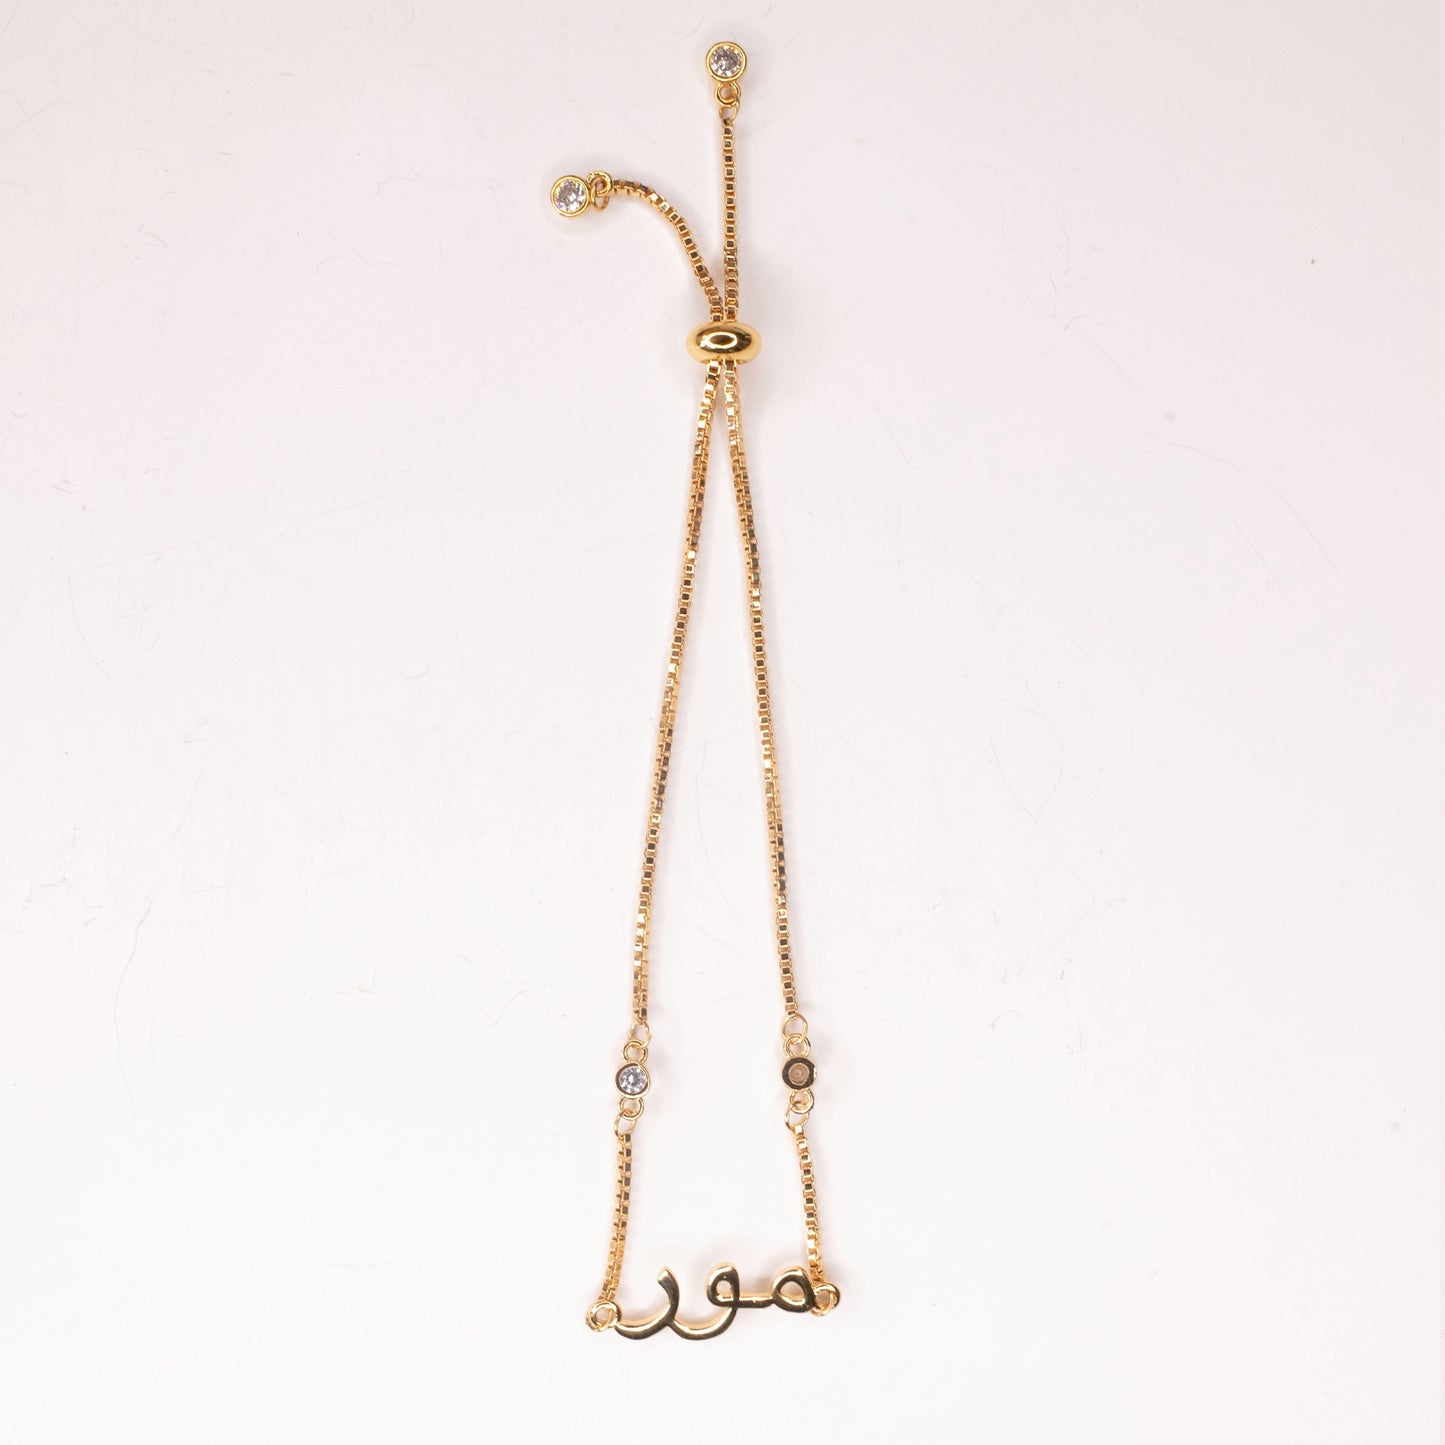 SAMPLE SALE, Mor Bracelets in Brass